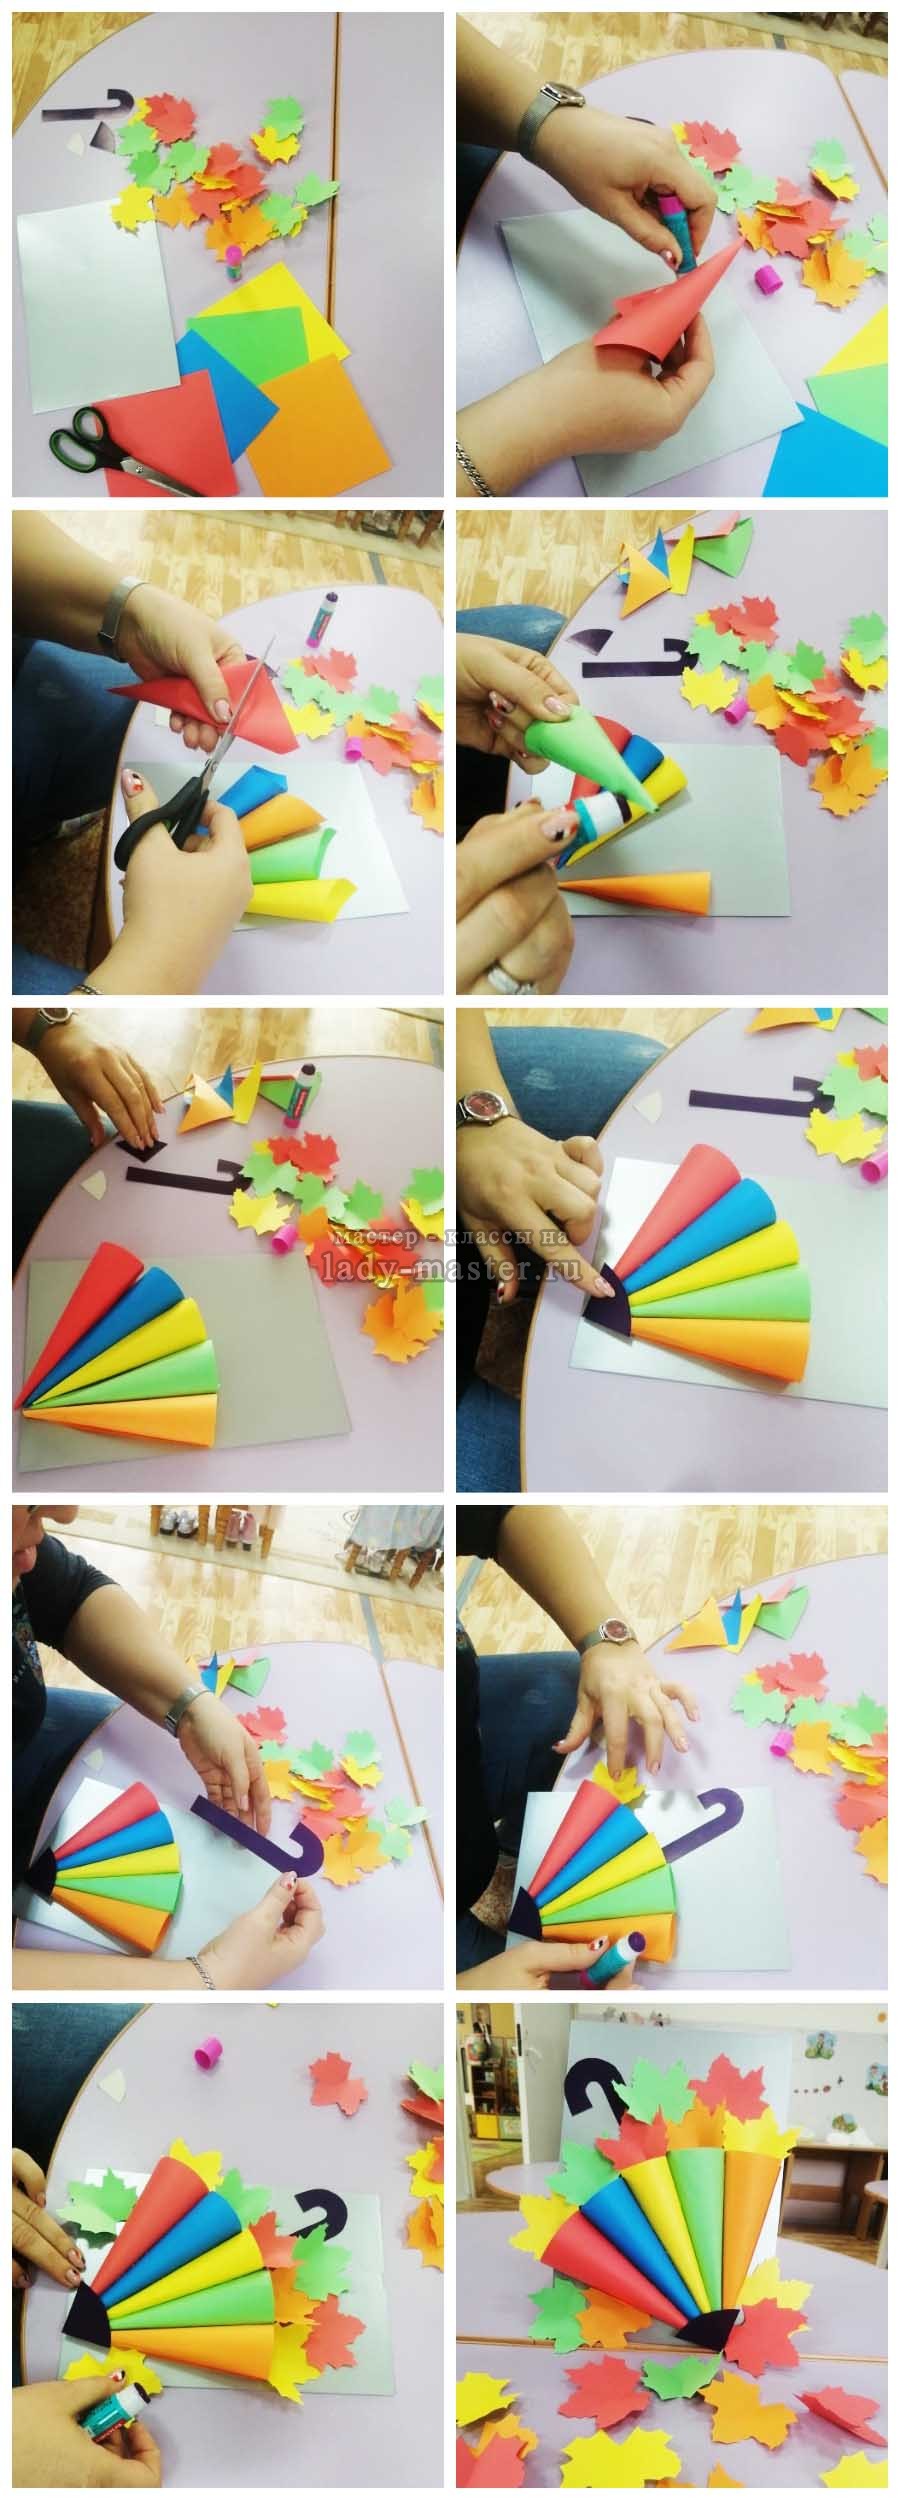 Как сделать оригами зонтик из бумаги для детей: пошаговая инструкция